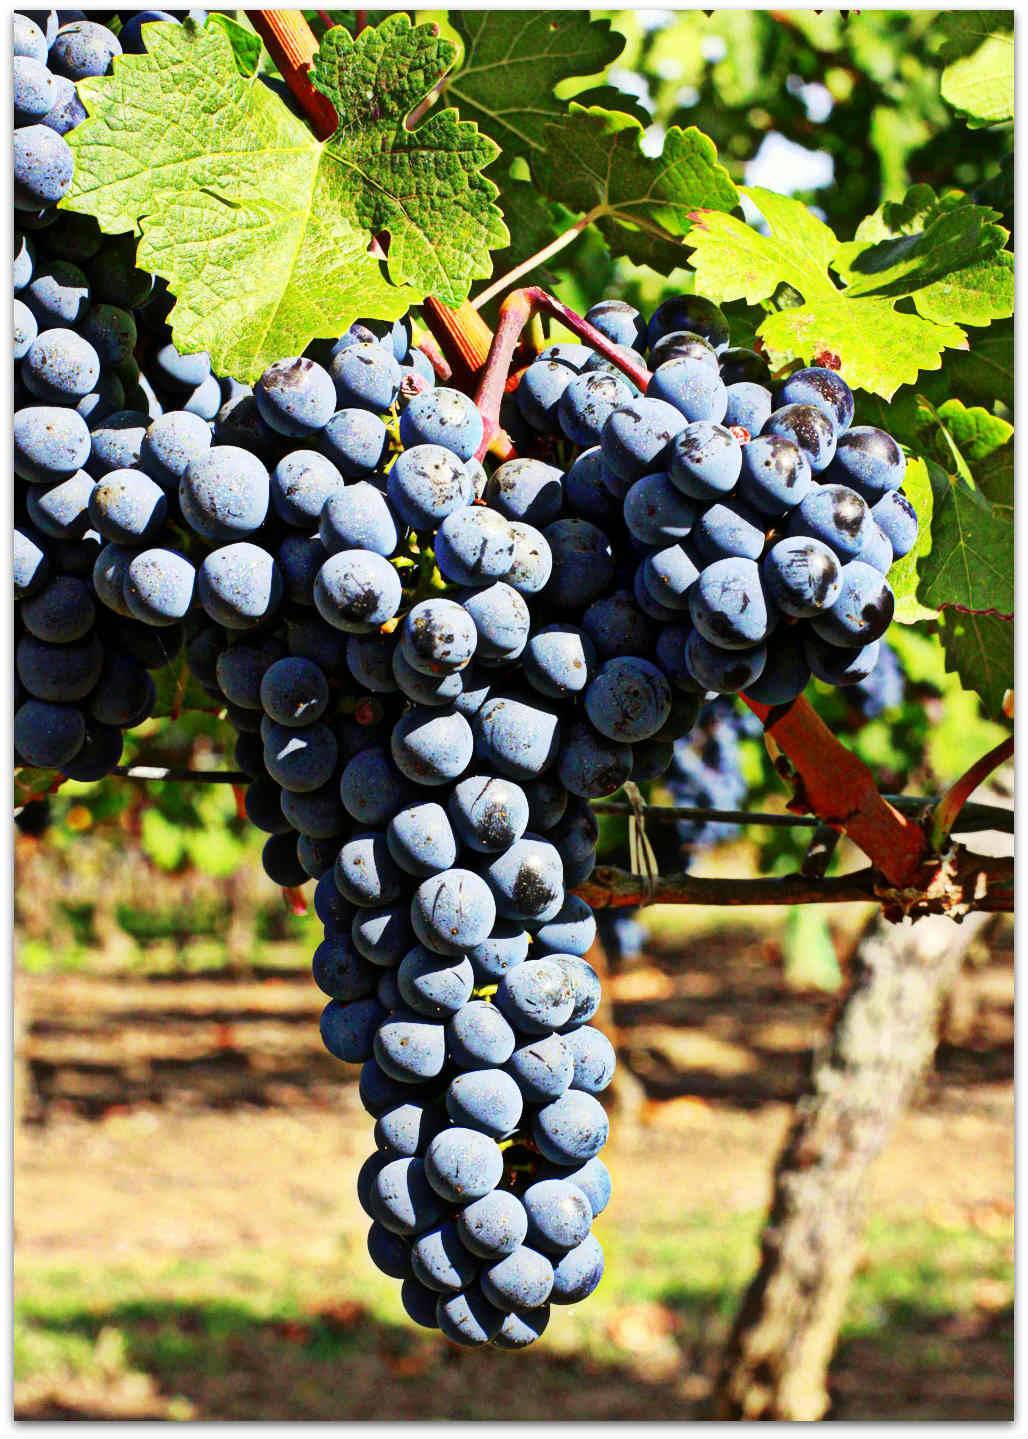 Описание винограда сорта виктория, особенности посадки и культивирования